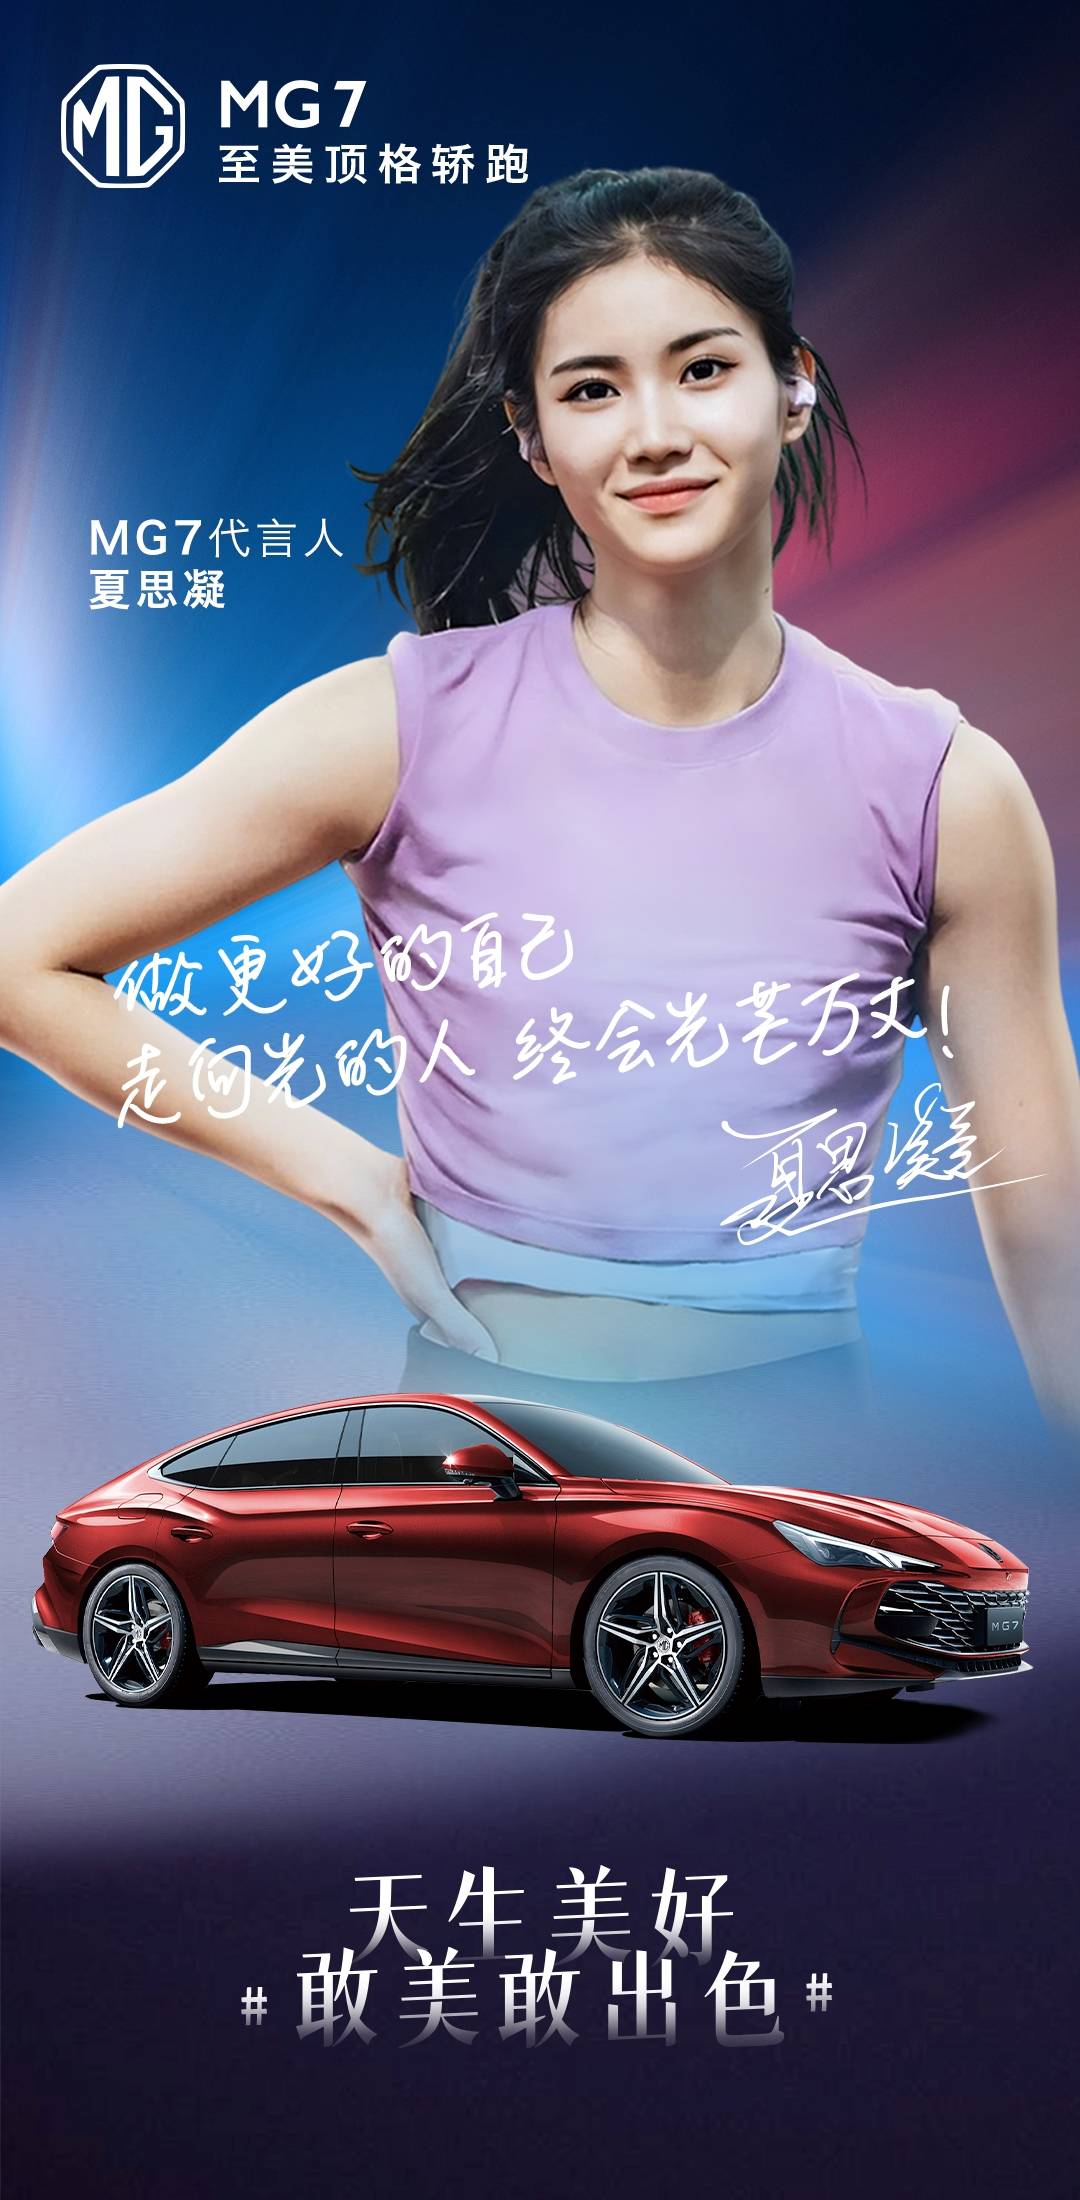 “女刘翔”夏思凝代言MG7 有实力有颜值|汽势营销